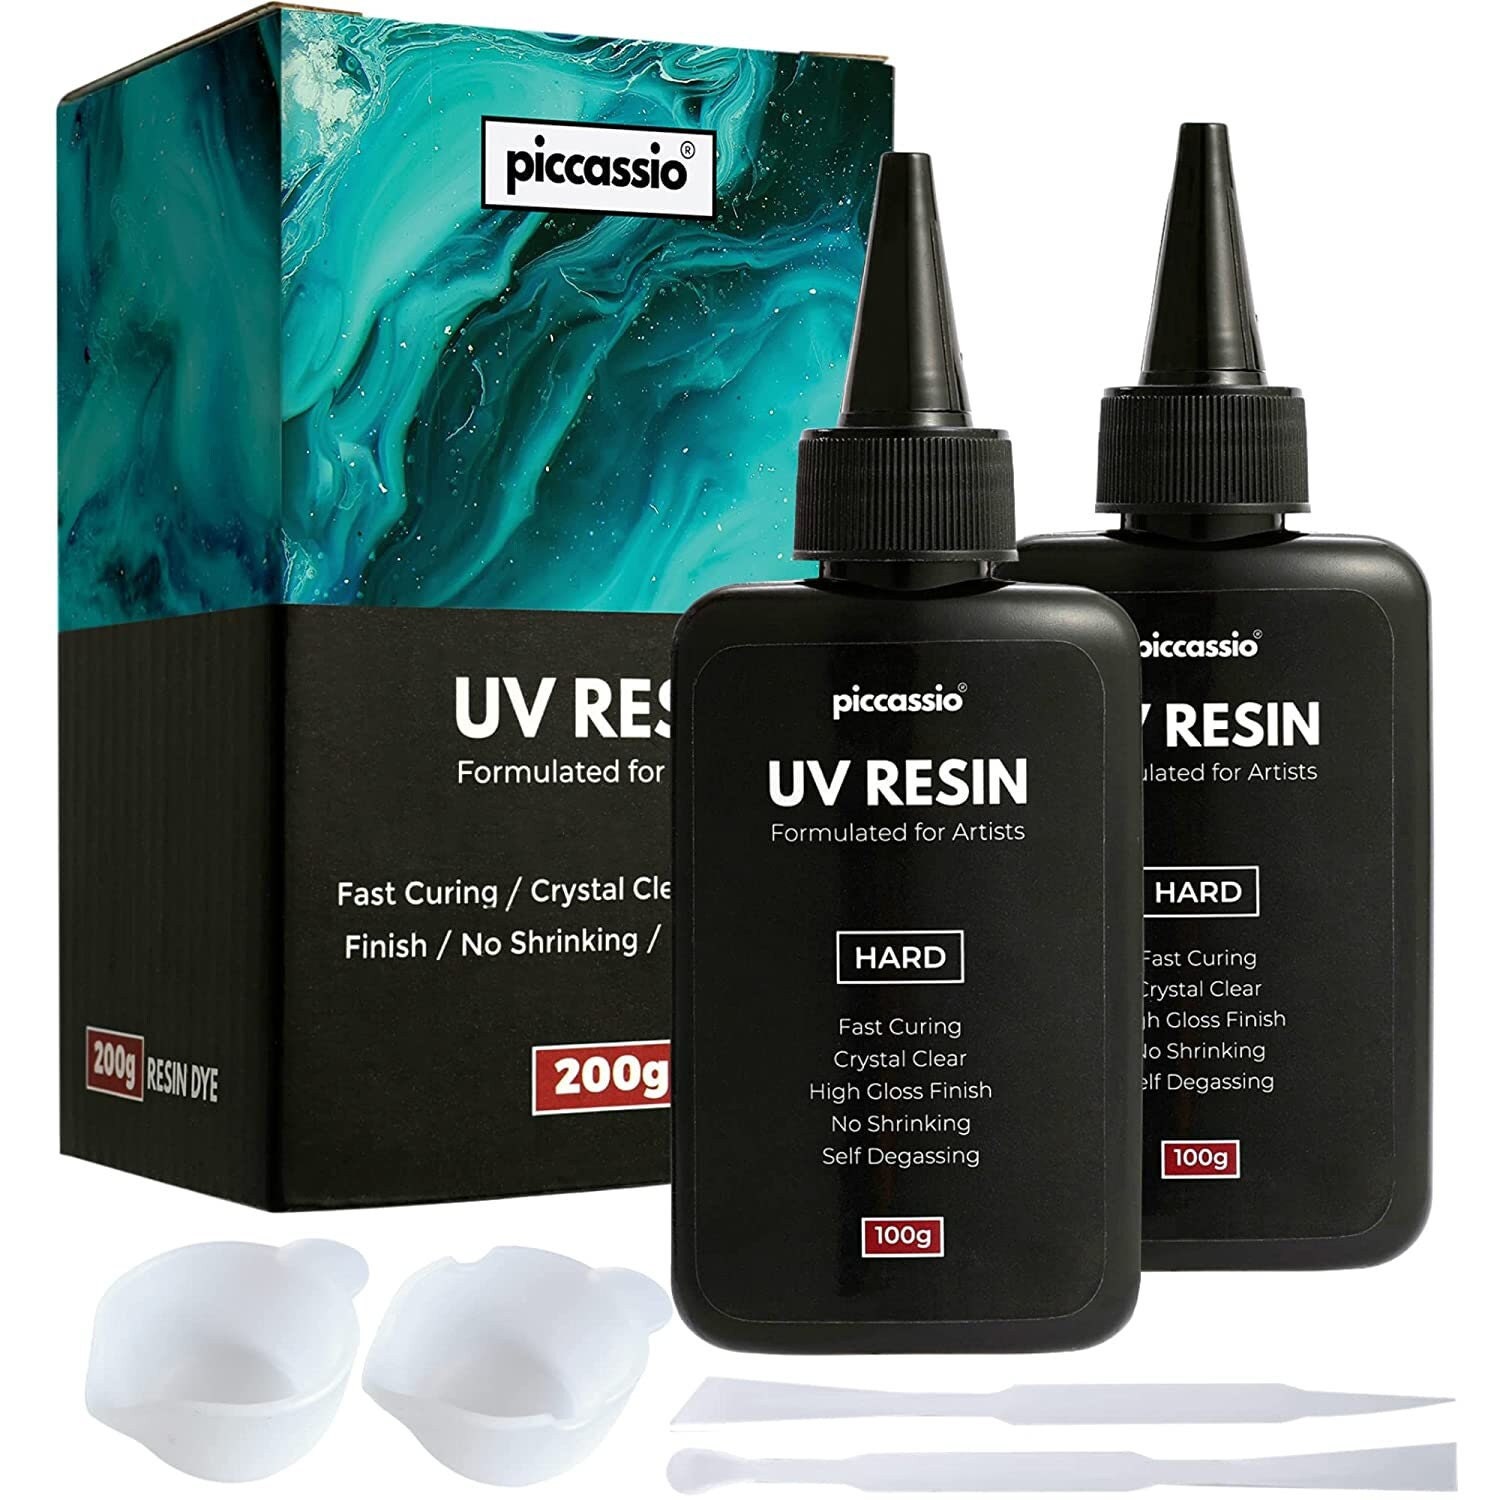 Teexpert UV Resin 100g, Upgrade Ultra Clear Hard UV Resin Kit, UV